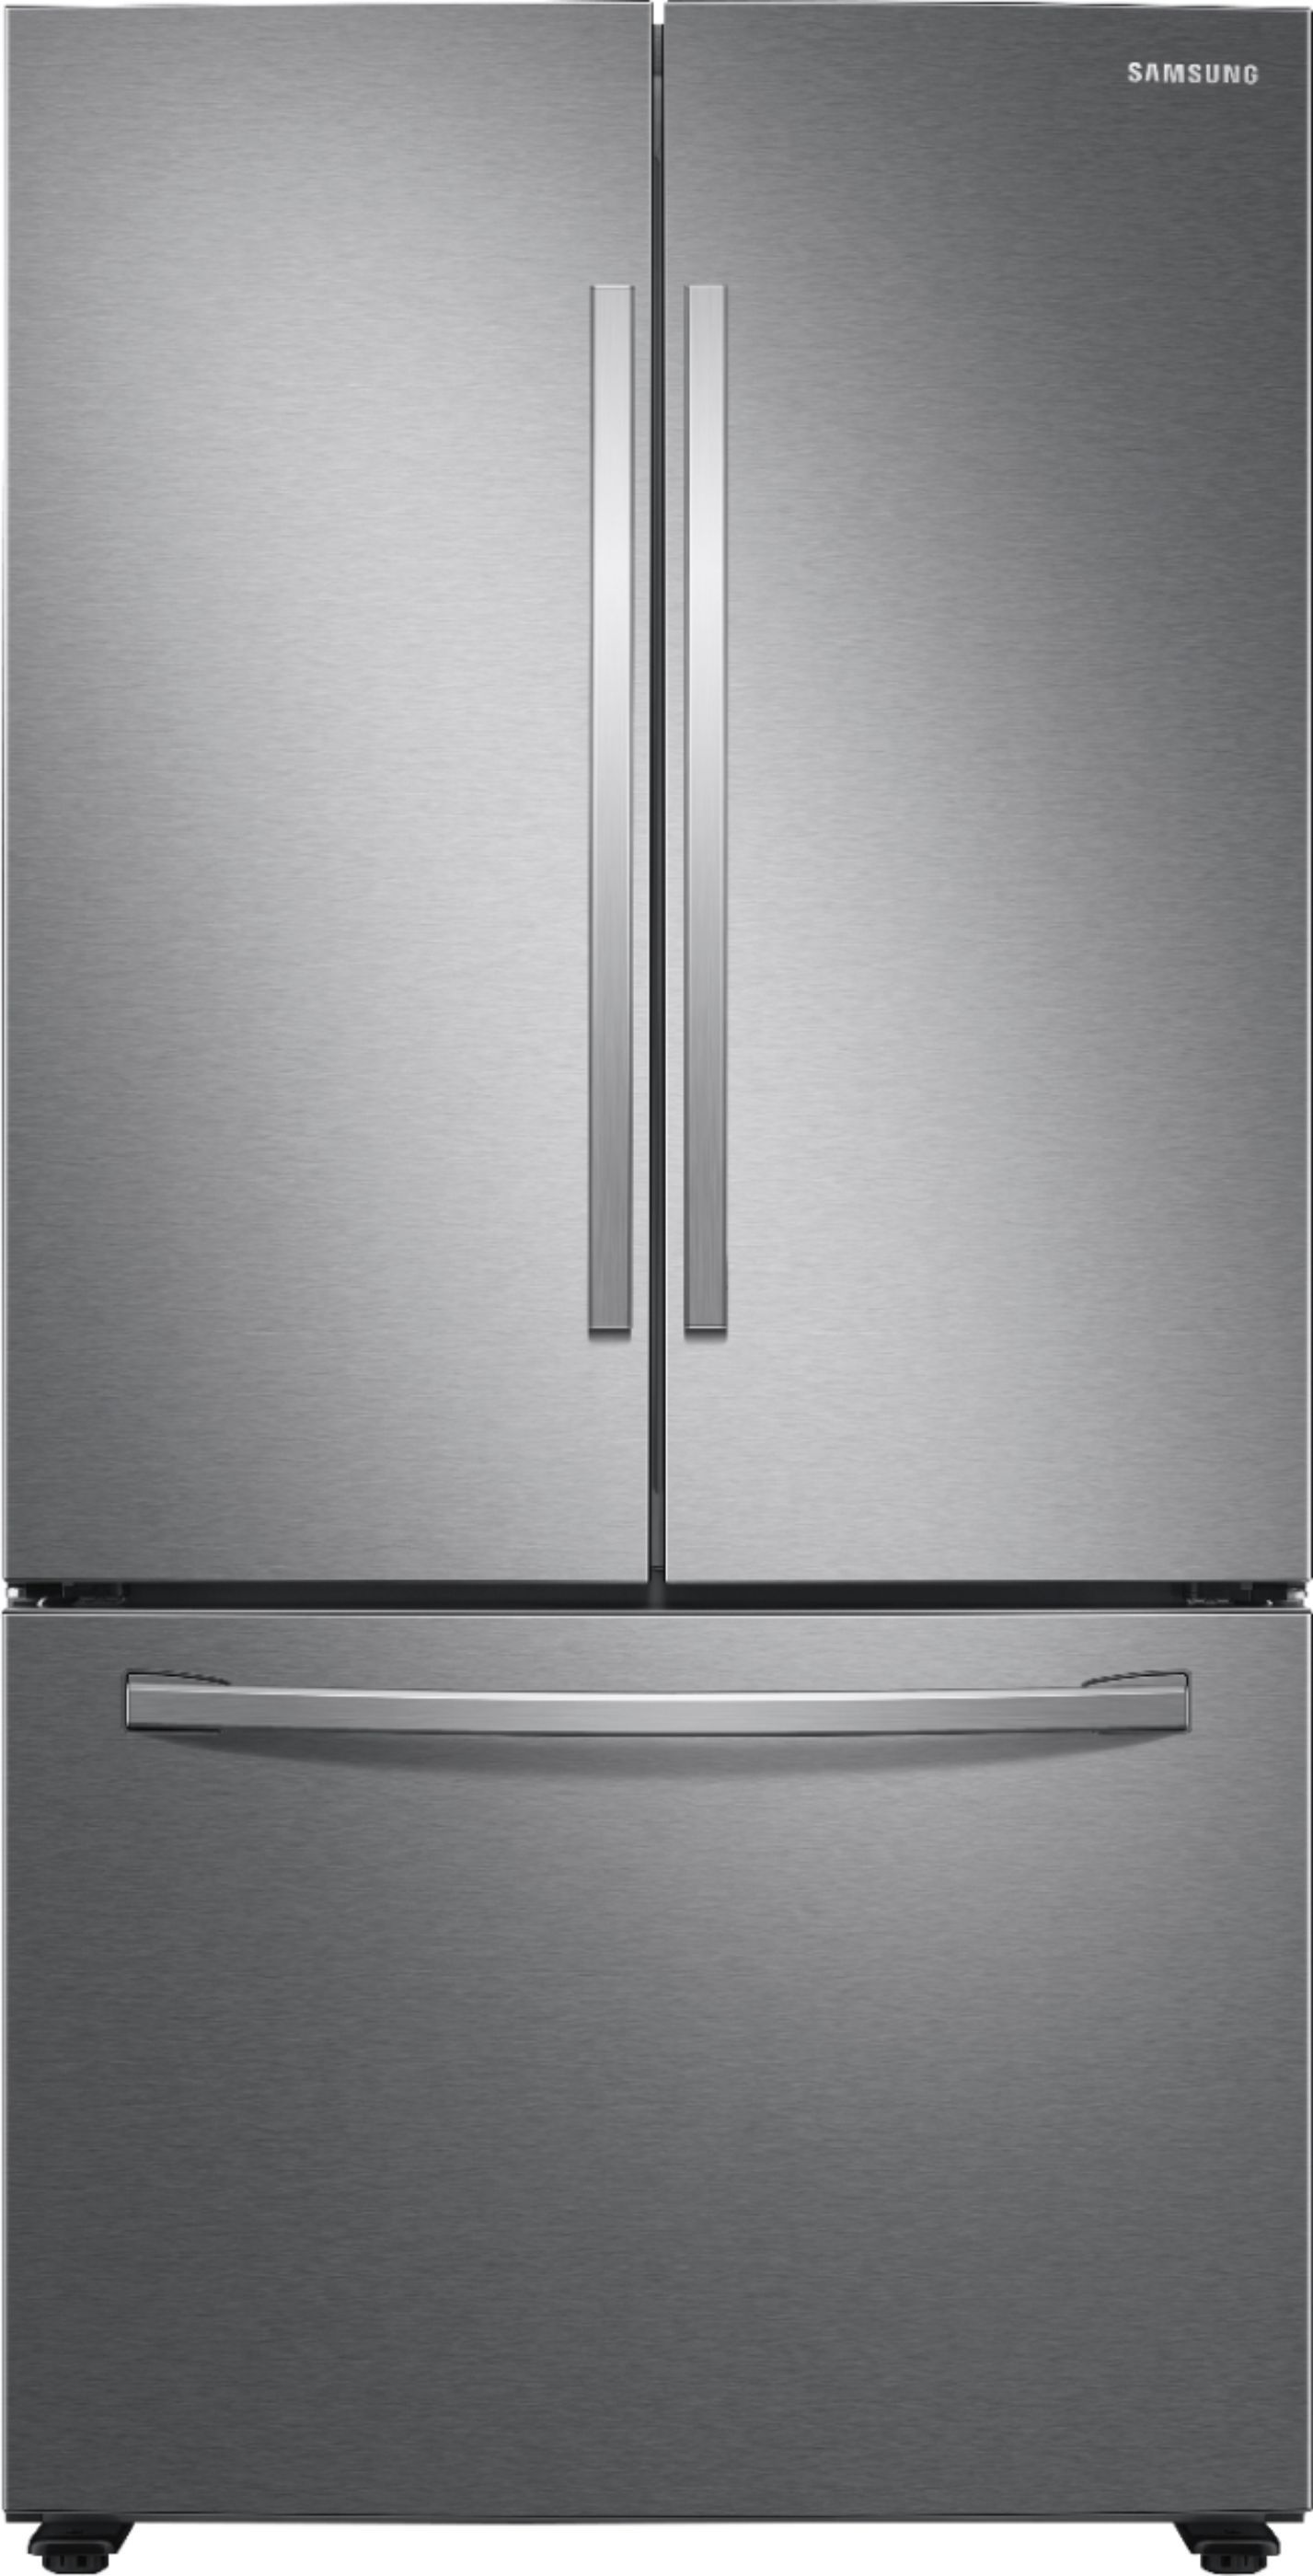 Samsung 28 cu. ft. Large Capacity 3-Door French Door Refrigerator Stainless steel RF28T5001SR/AA ... | Best Buy U.S.